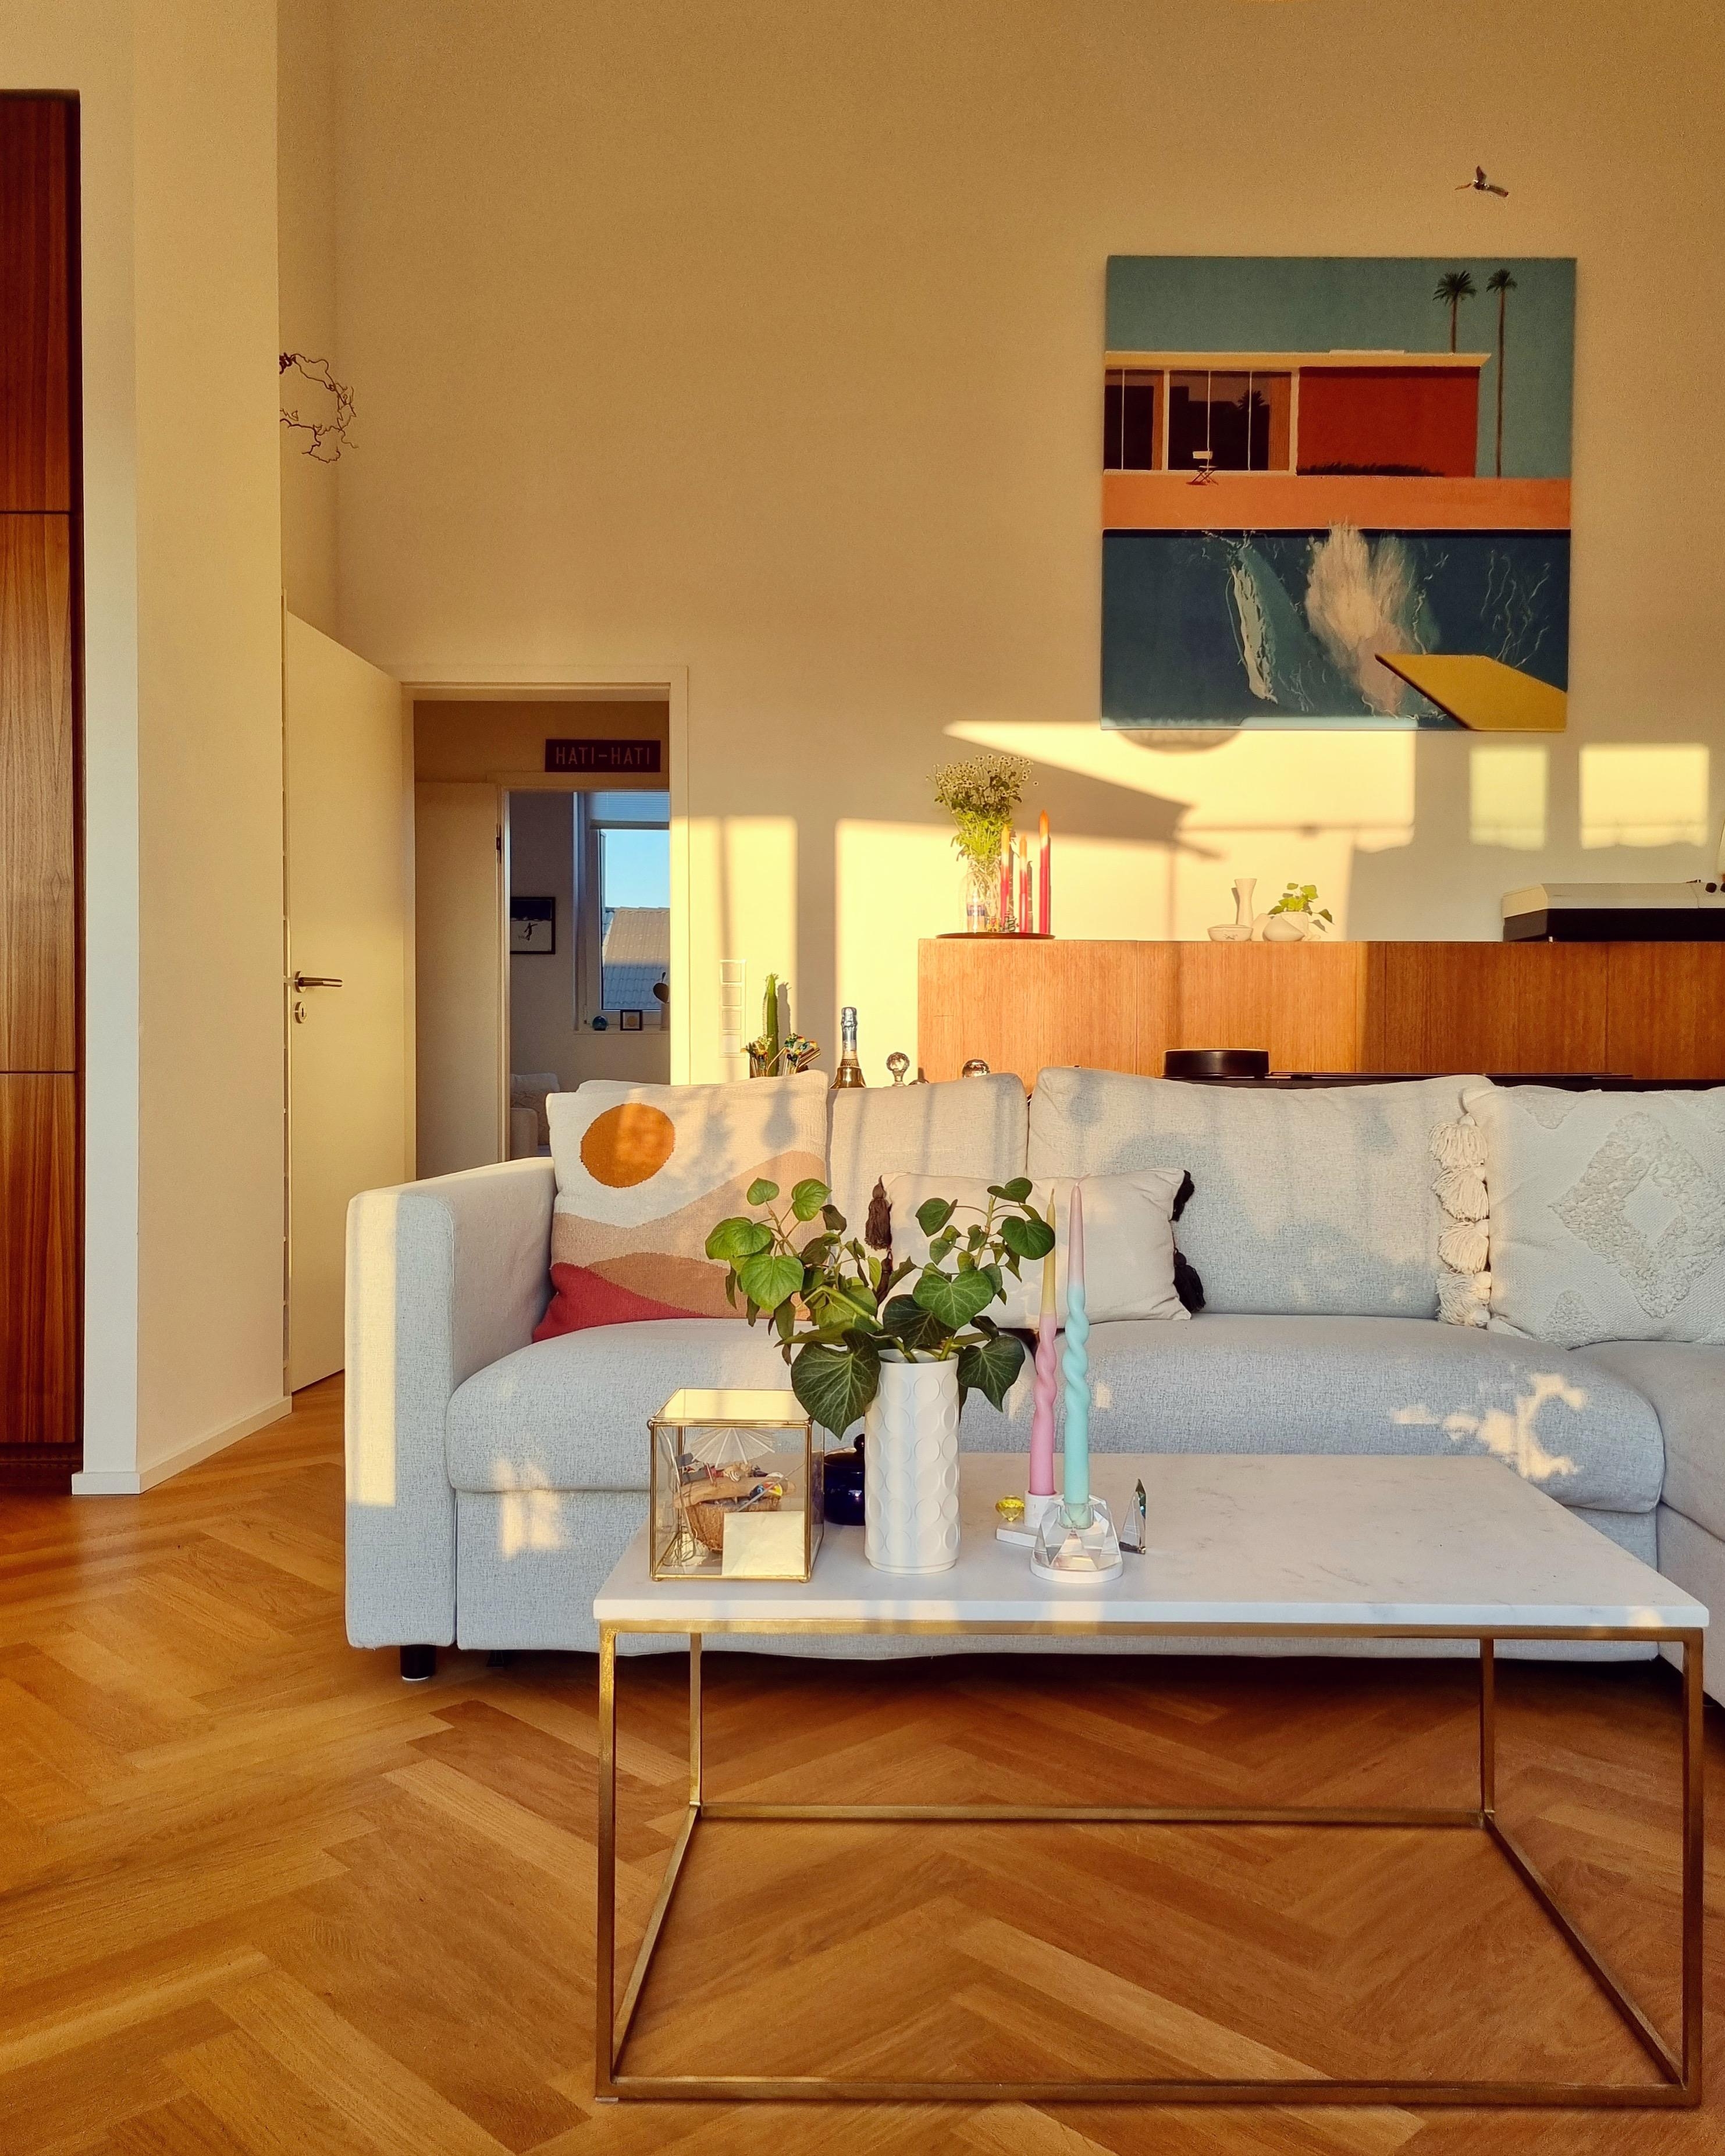 Bester Platz hier ☺️ #lieblingsplatz #wohnzimmer #couch #goldenhour